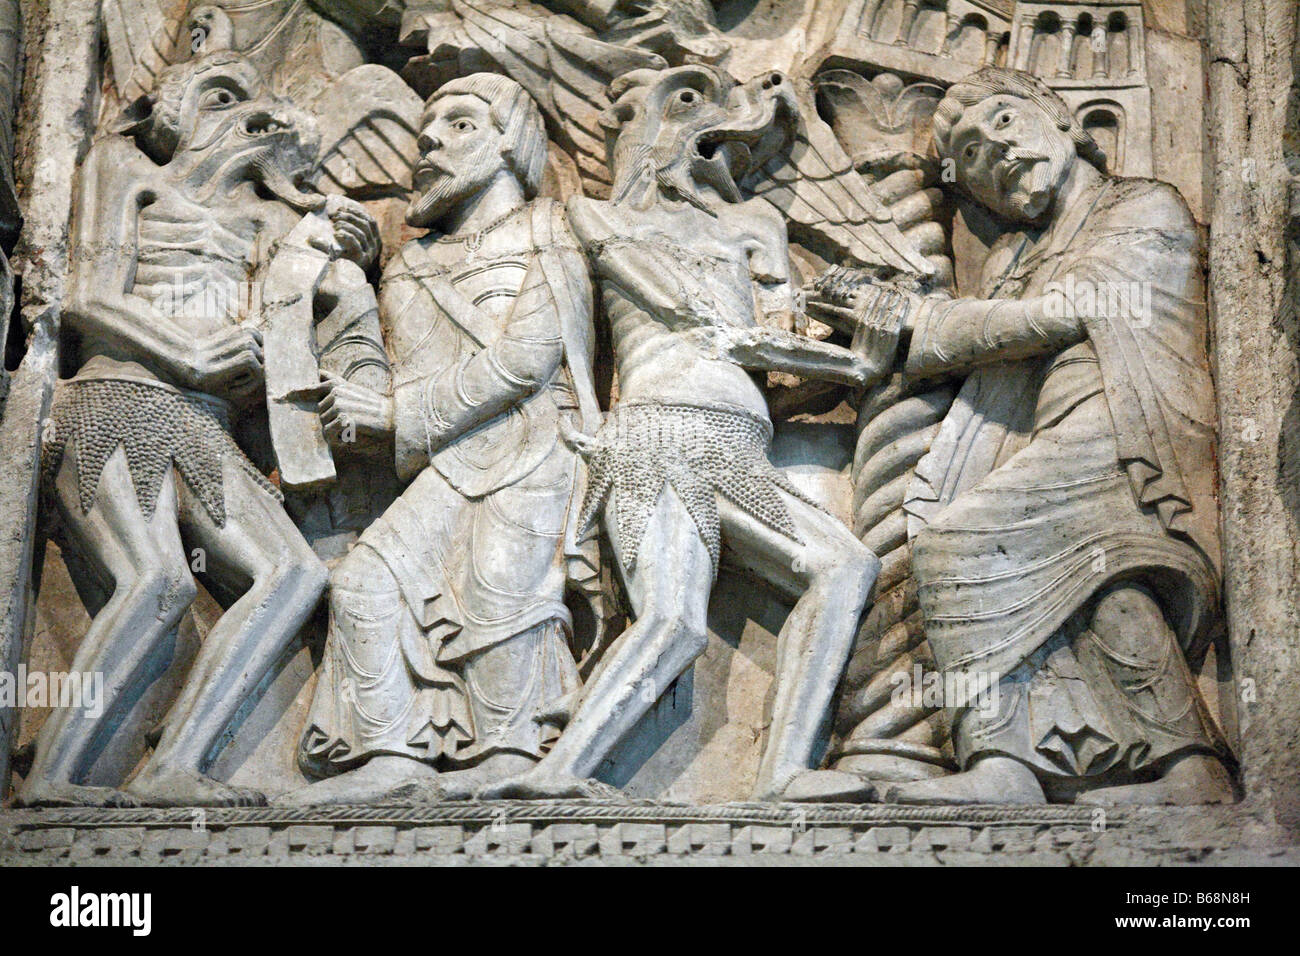 Sculpture en pierre médiévale, bas-relief sur le portail de l'église de St Marie (1120-1135), Paris, France Banque D'Images